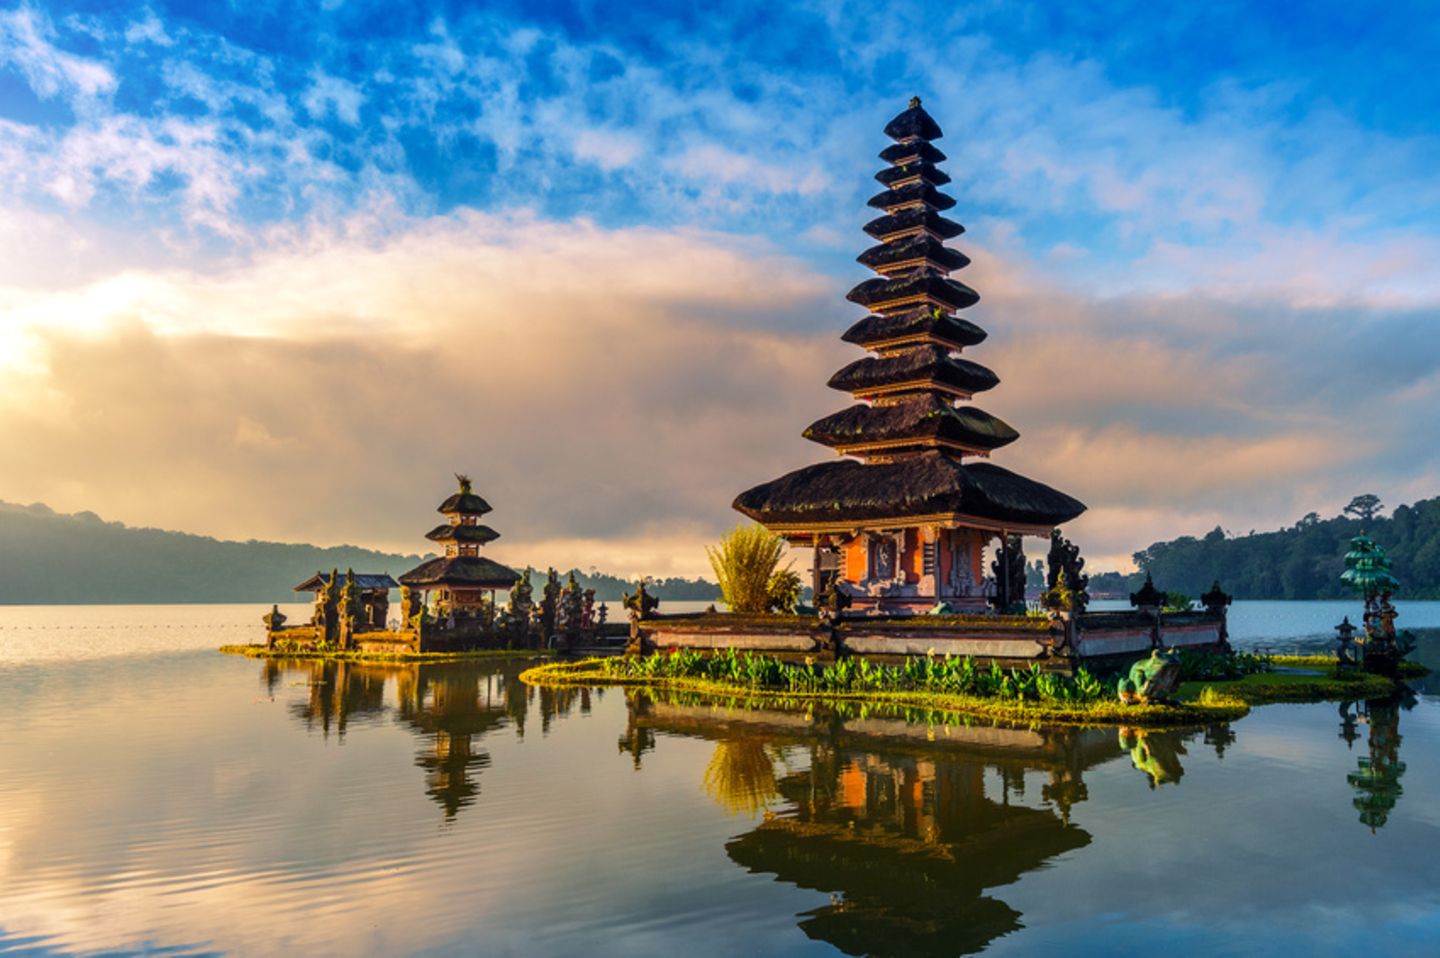 Bali Insel voller Sehenswürdigkeiten [GEO]